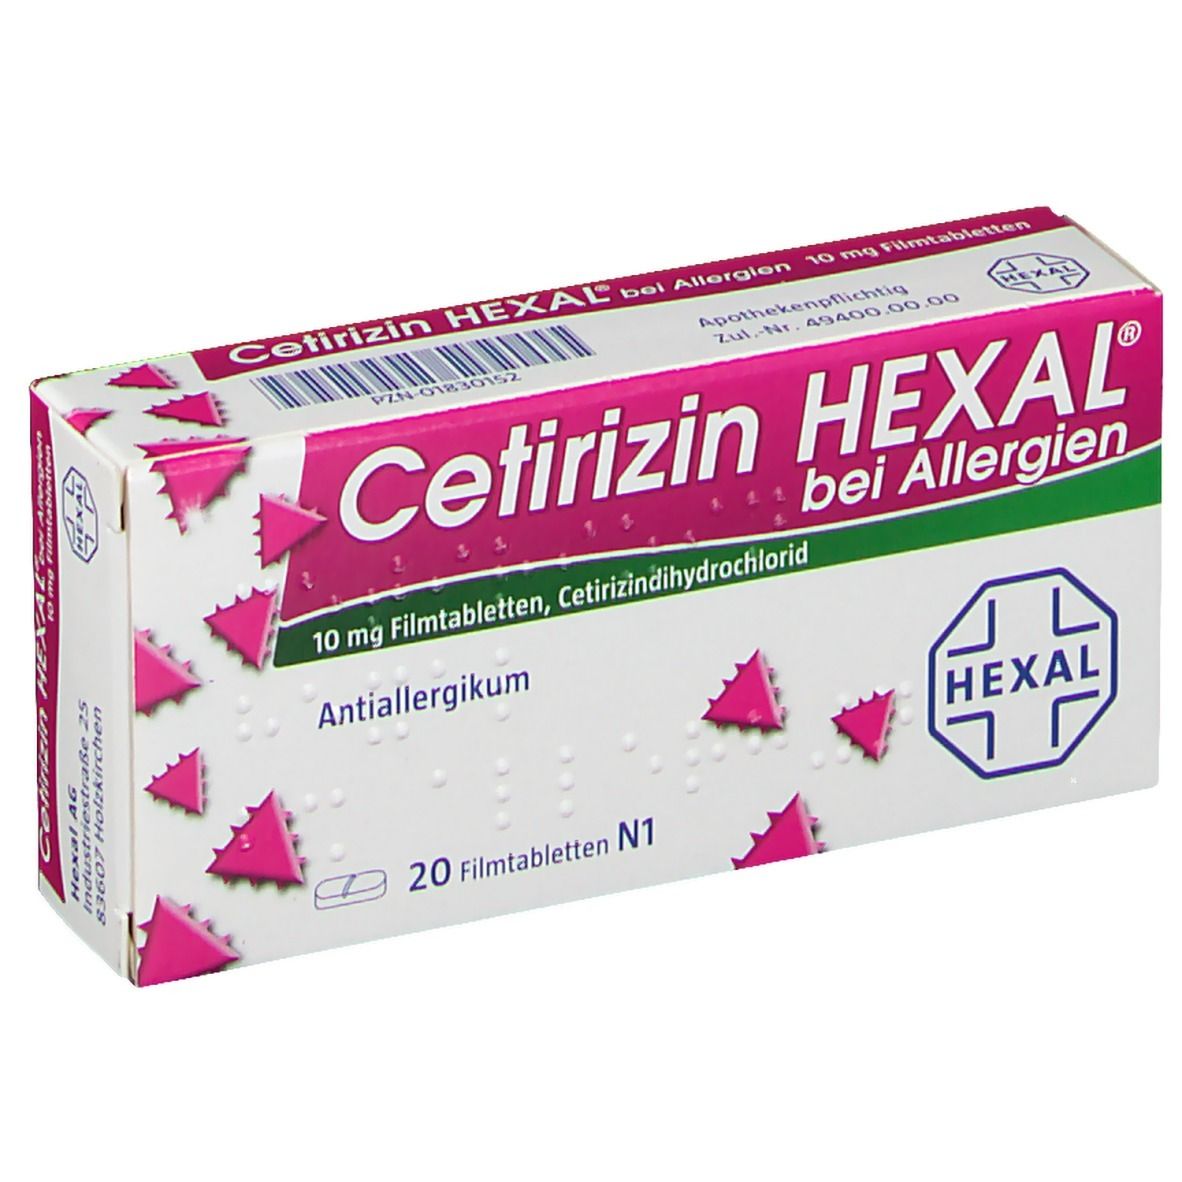 Цетиризин антигистаминный. Цетиризин. Цетиризин таблетки. Hexal таблетки. Цетиризин от аллергии.